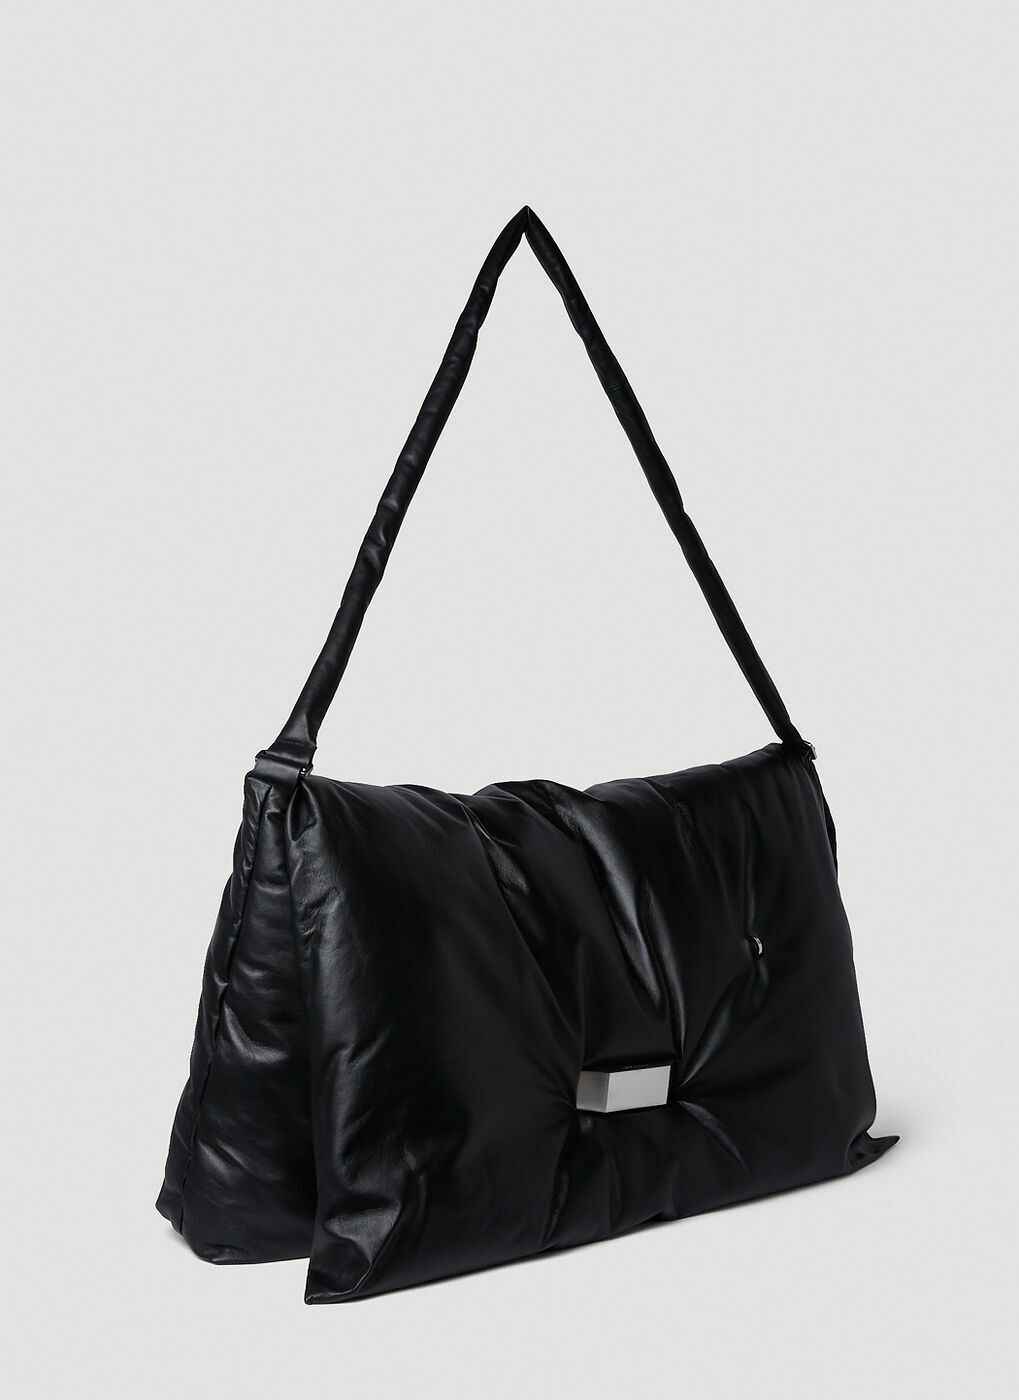 Pillow Tote Bag in Black